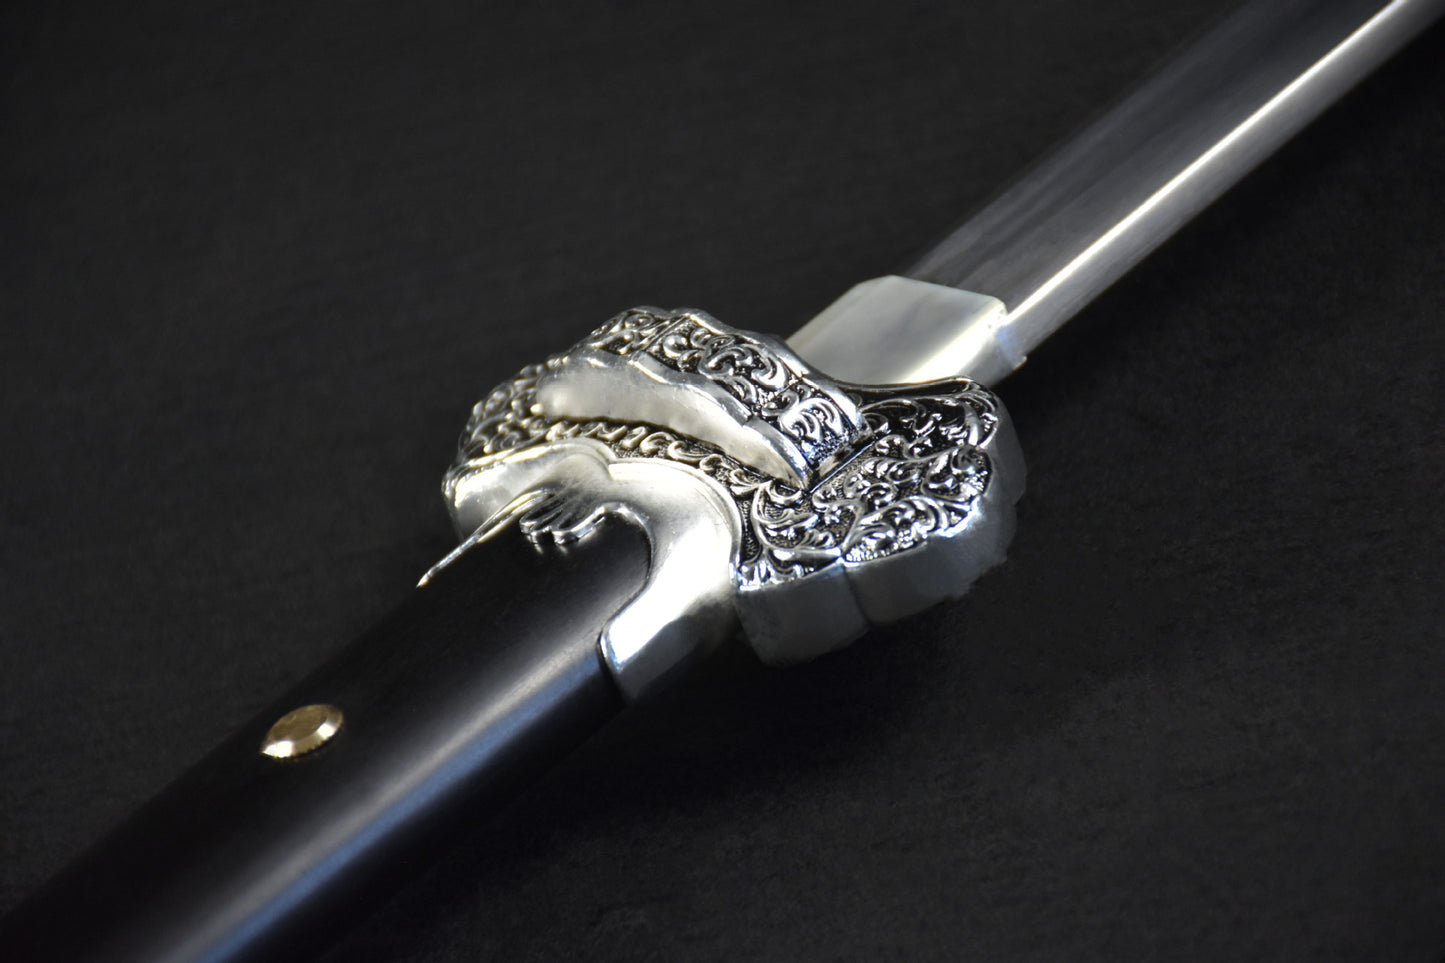 Manual Imitation silver Tang Dynasty Sword